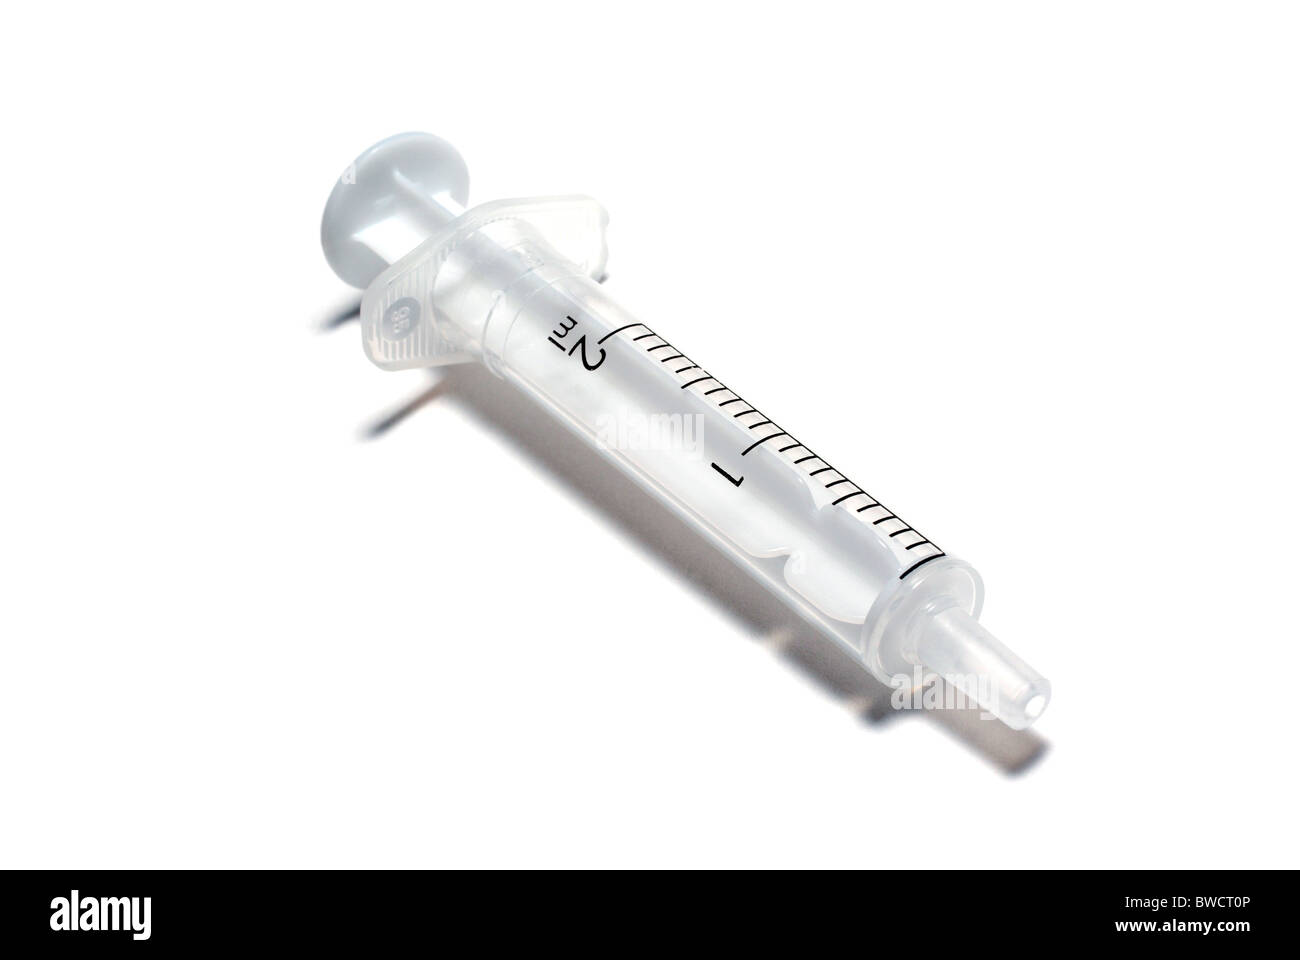 Syringe without needle isolated on white background. Stock Photo